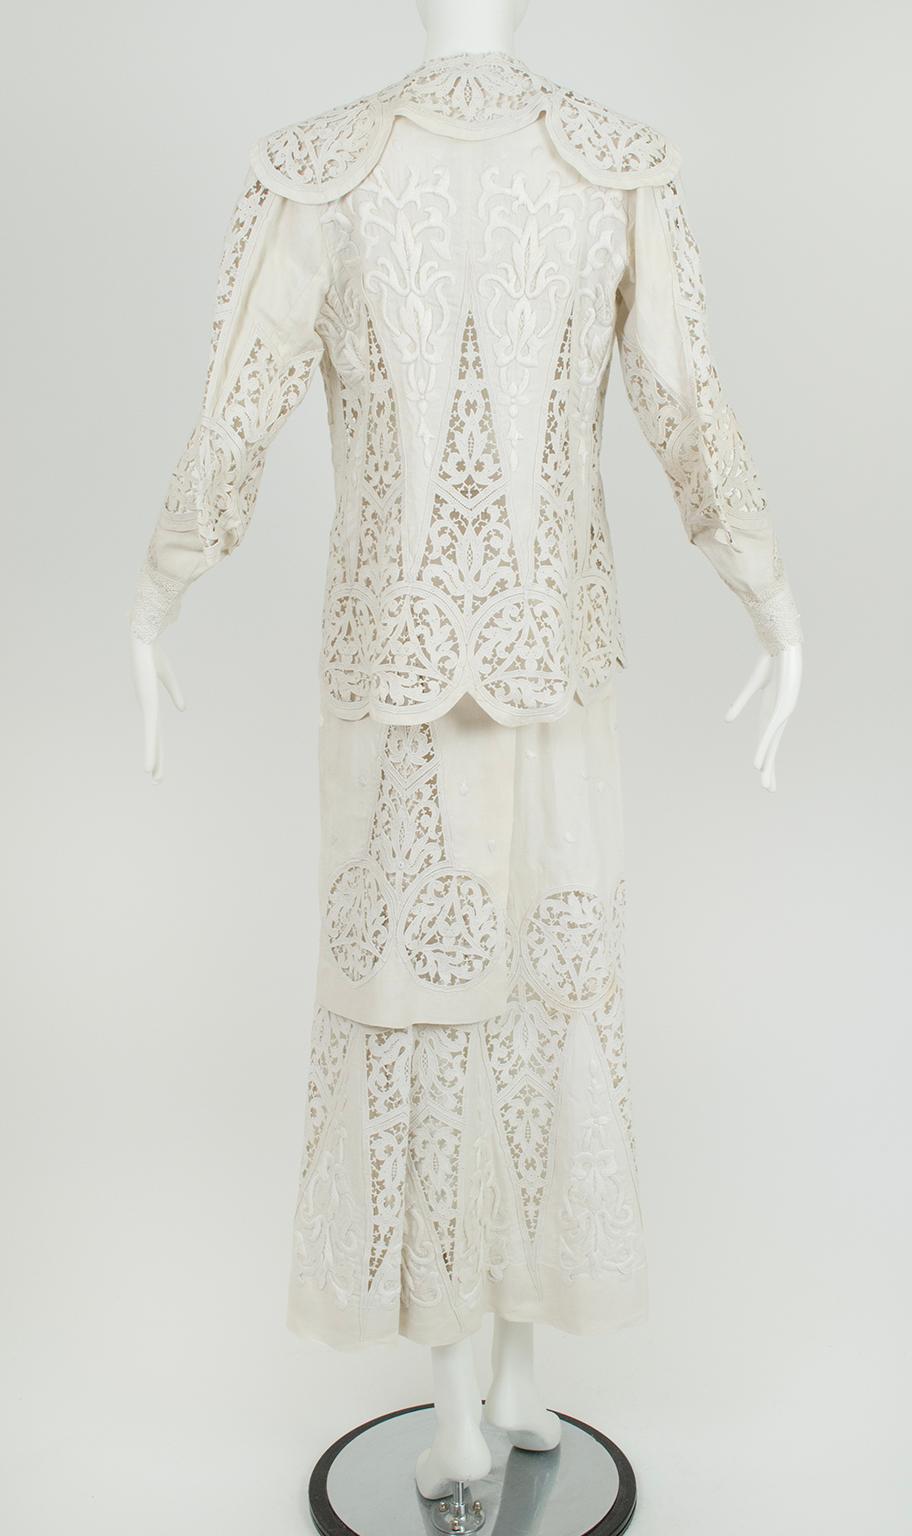 Donna Abito da sposa o da passeggio irlandese bianco edoardiano in cotone e uncinetto - L, 1900 in vendita